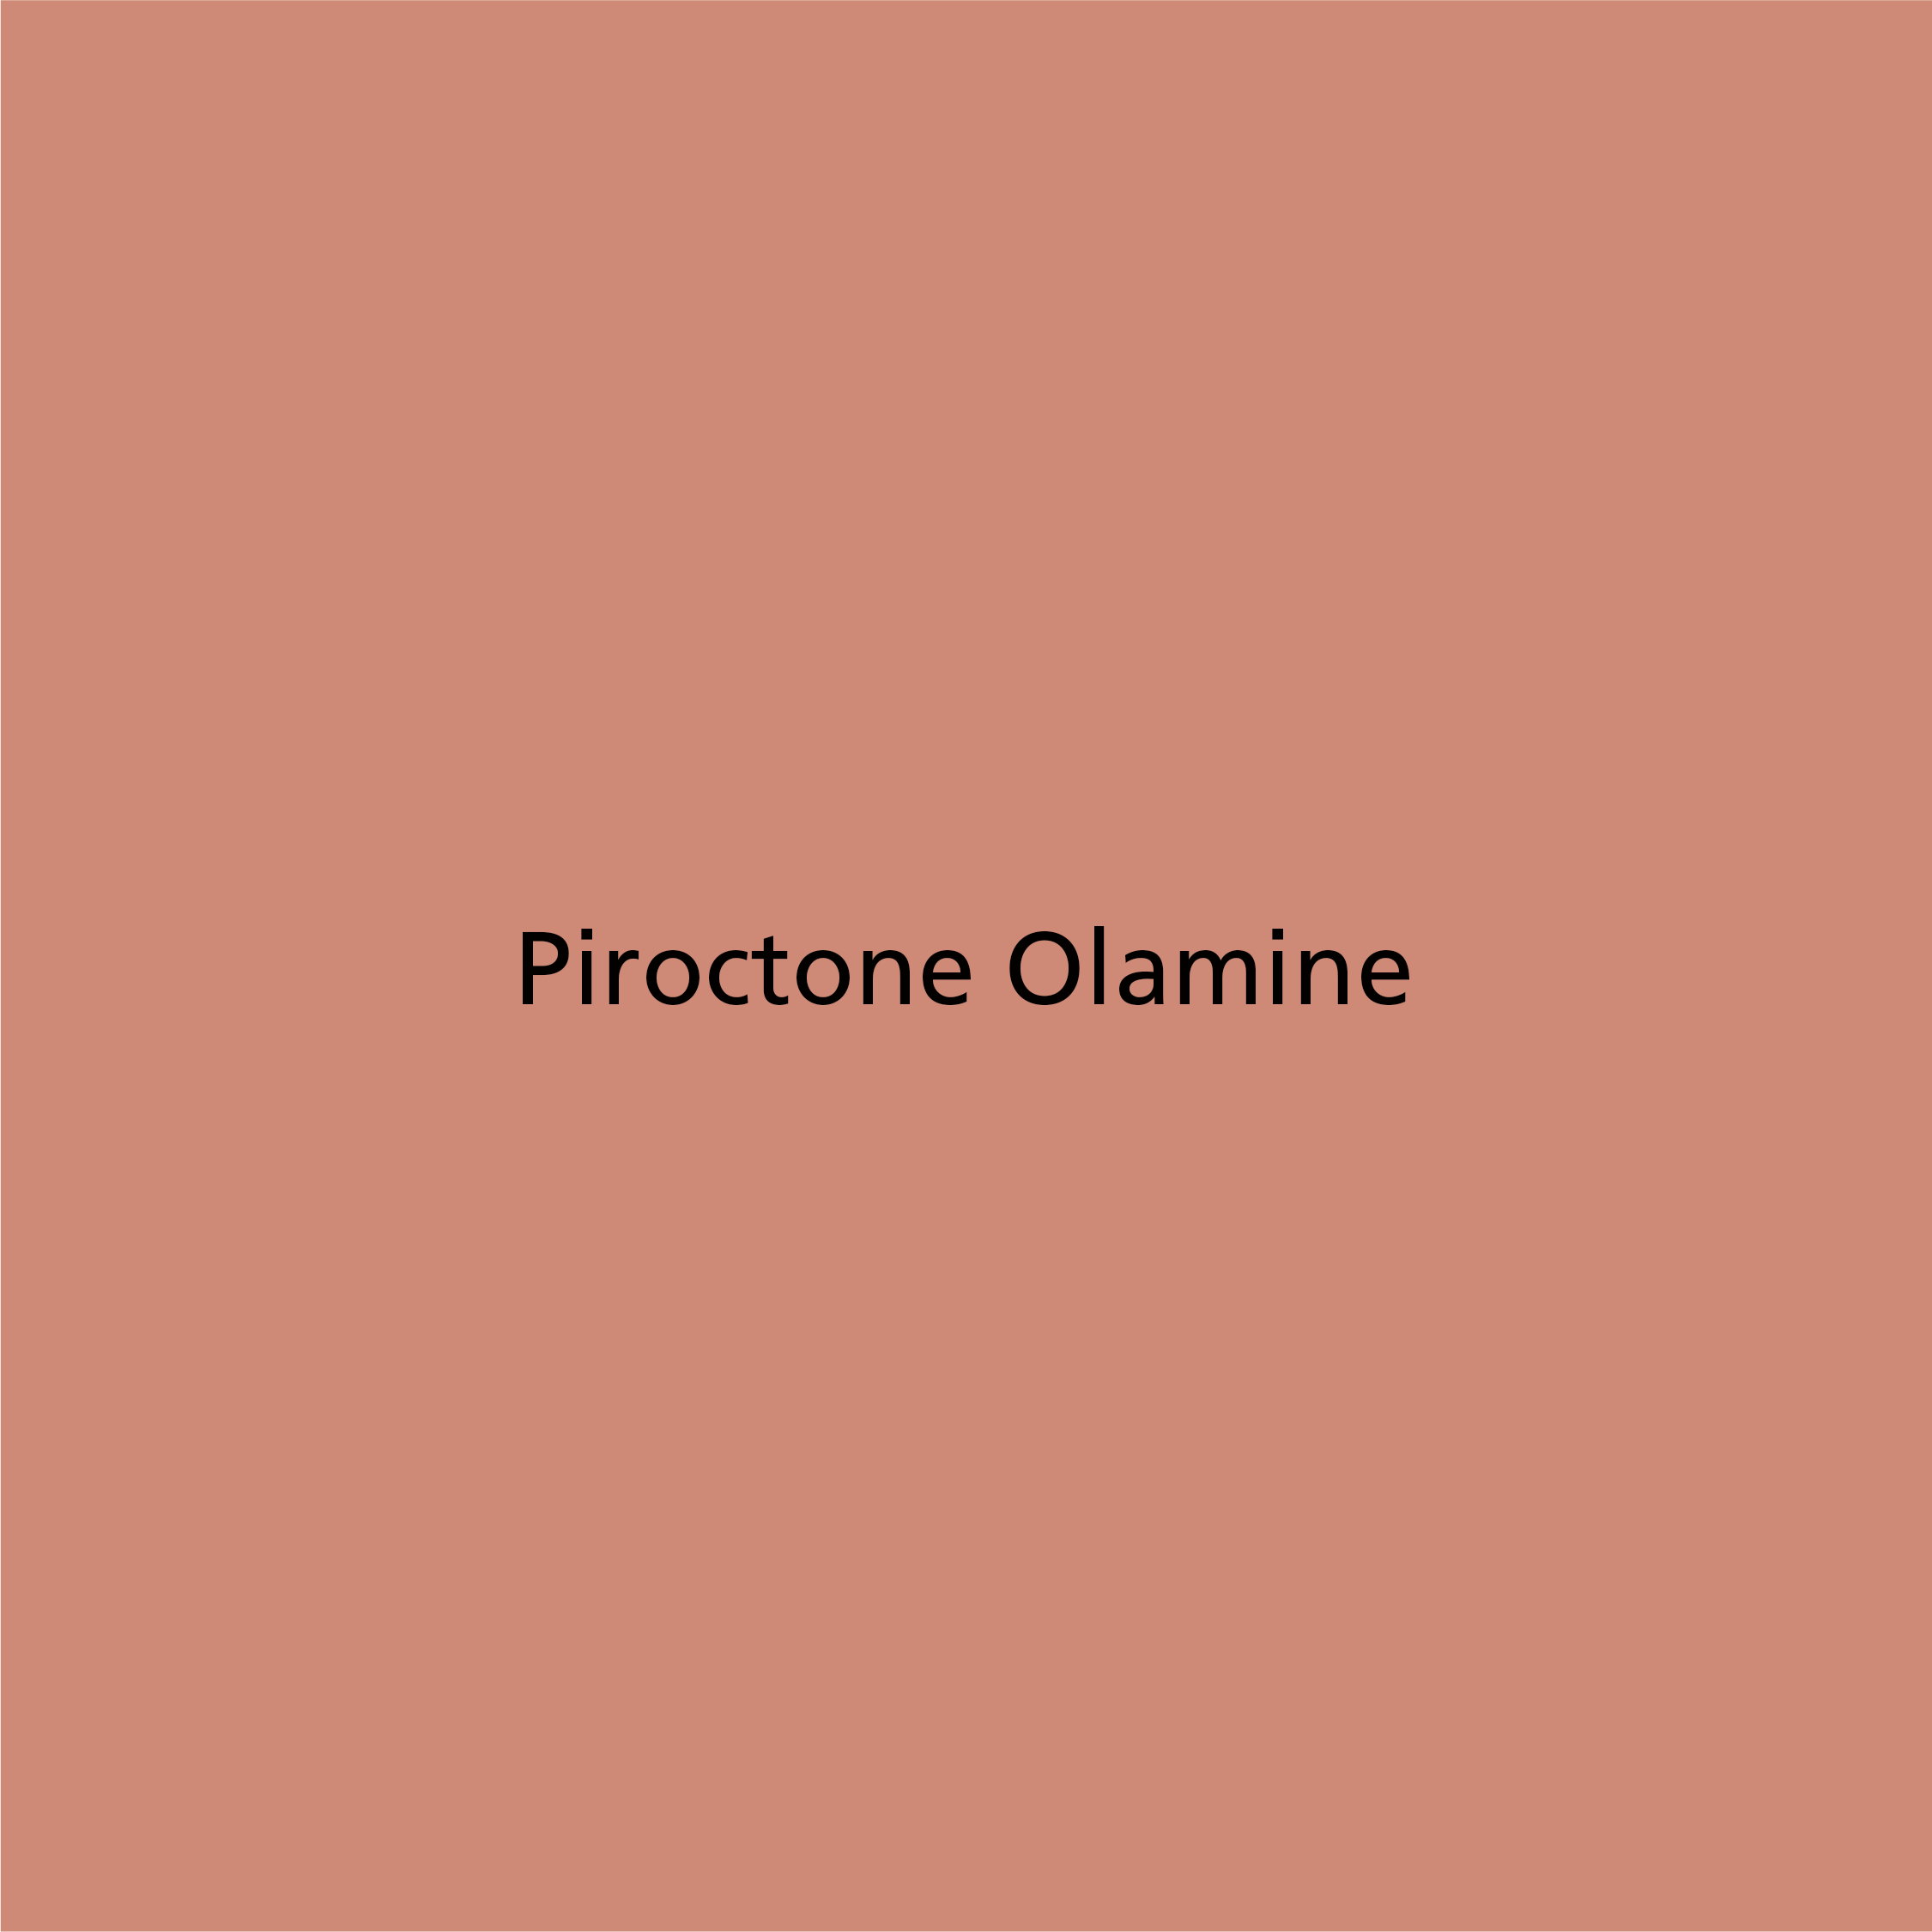 Piroctone Olamine